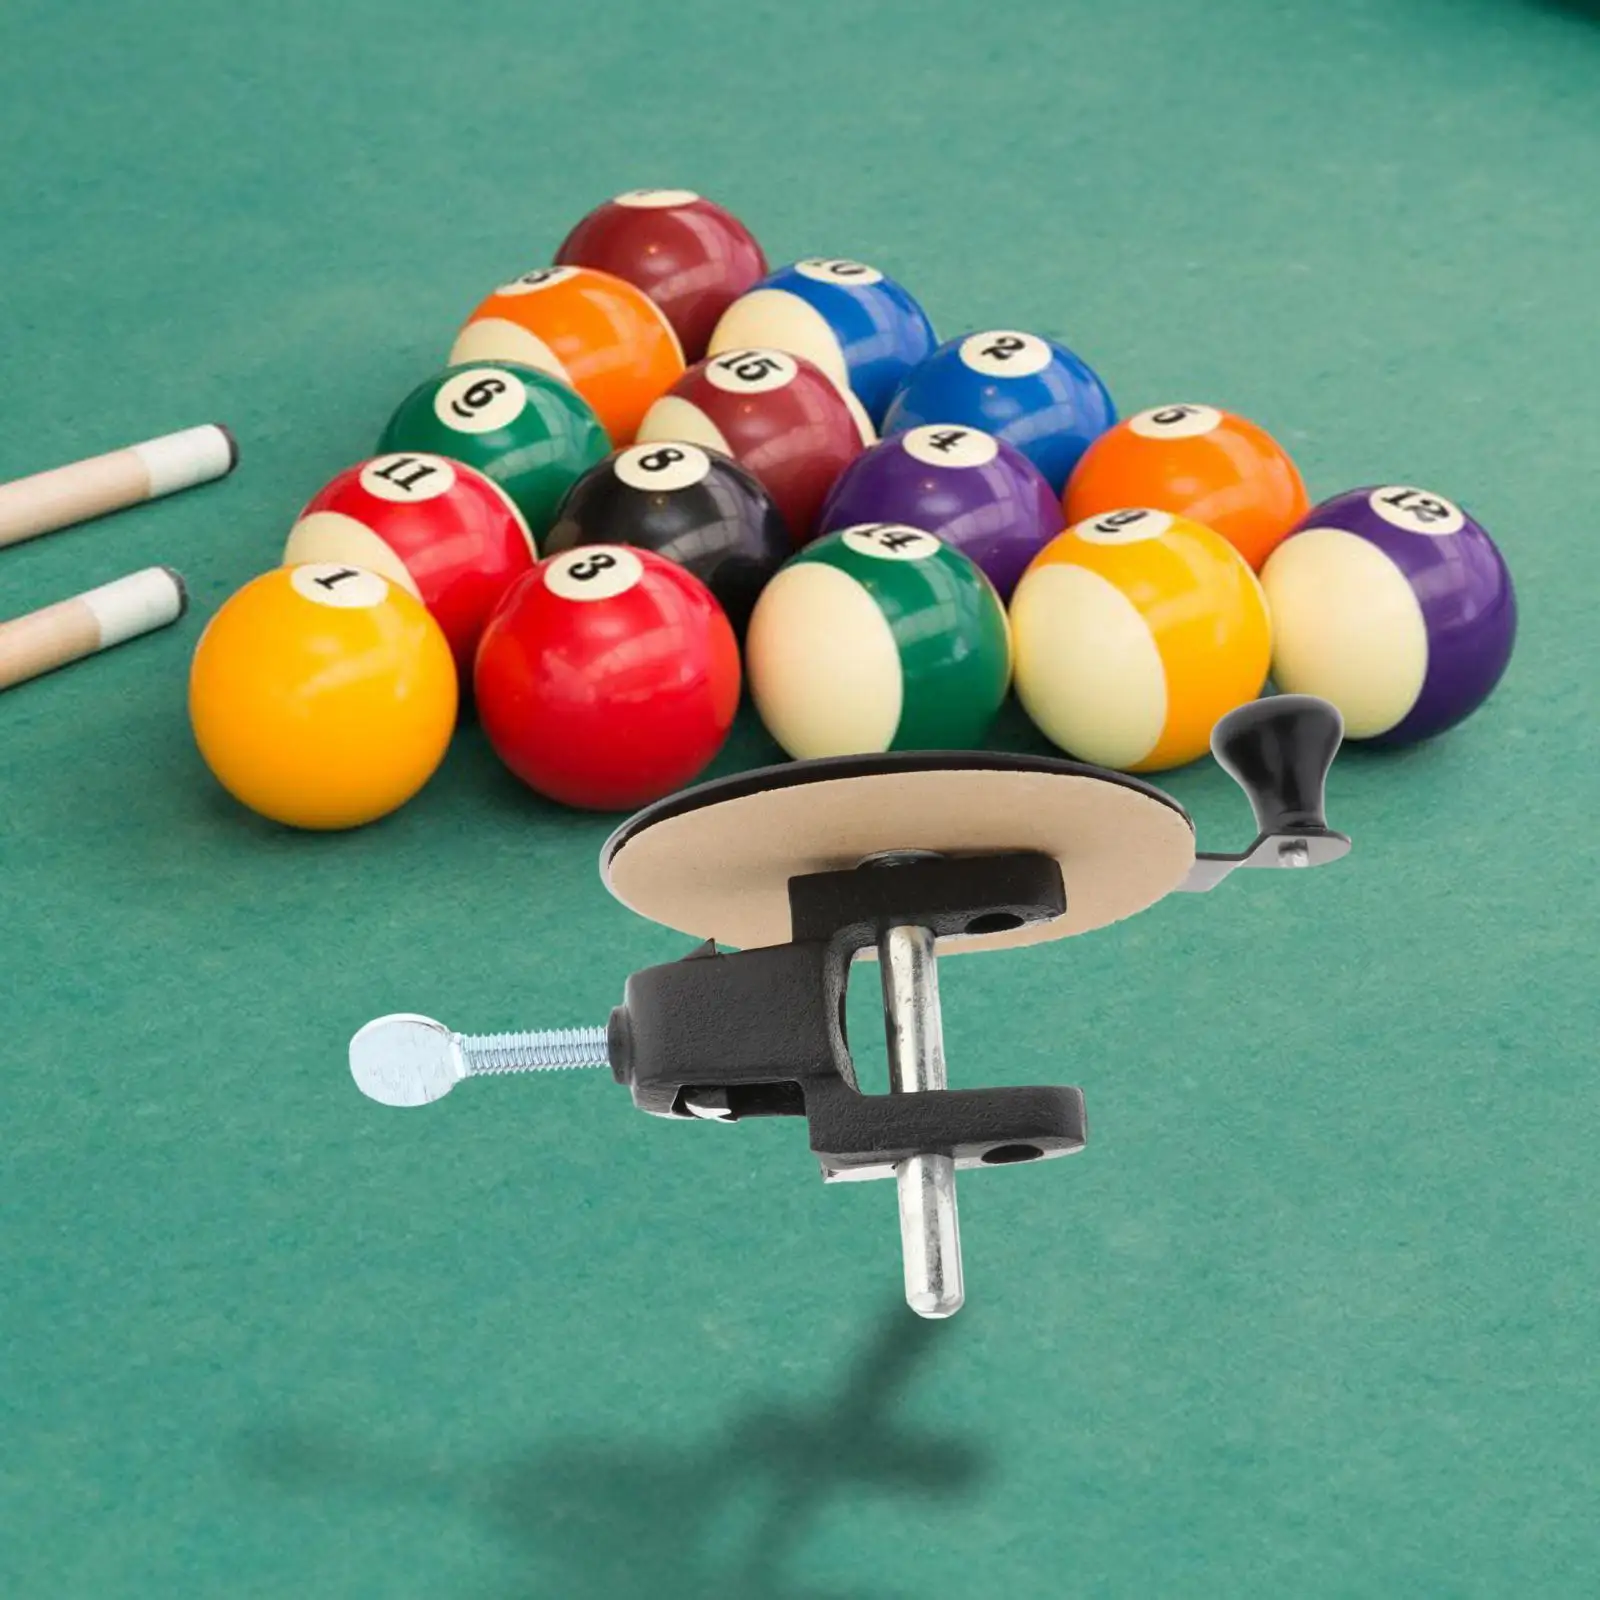 Billiard Pool Cue Tip Sander Pool Cue Maintenance Billiard Pool Cue Tip Shaper Tool for Daily Needs Replacements Forming